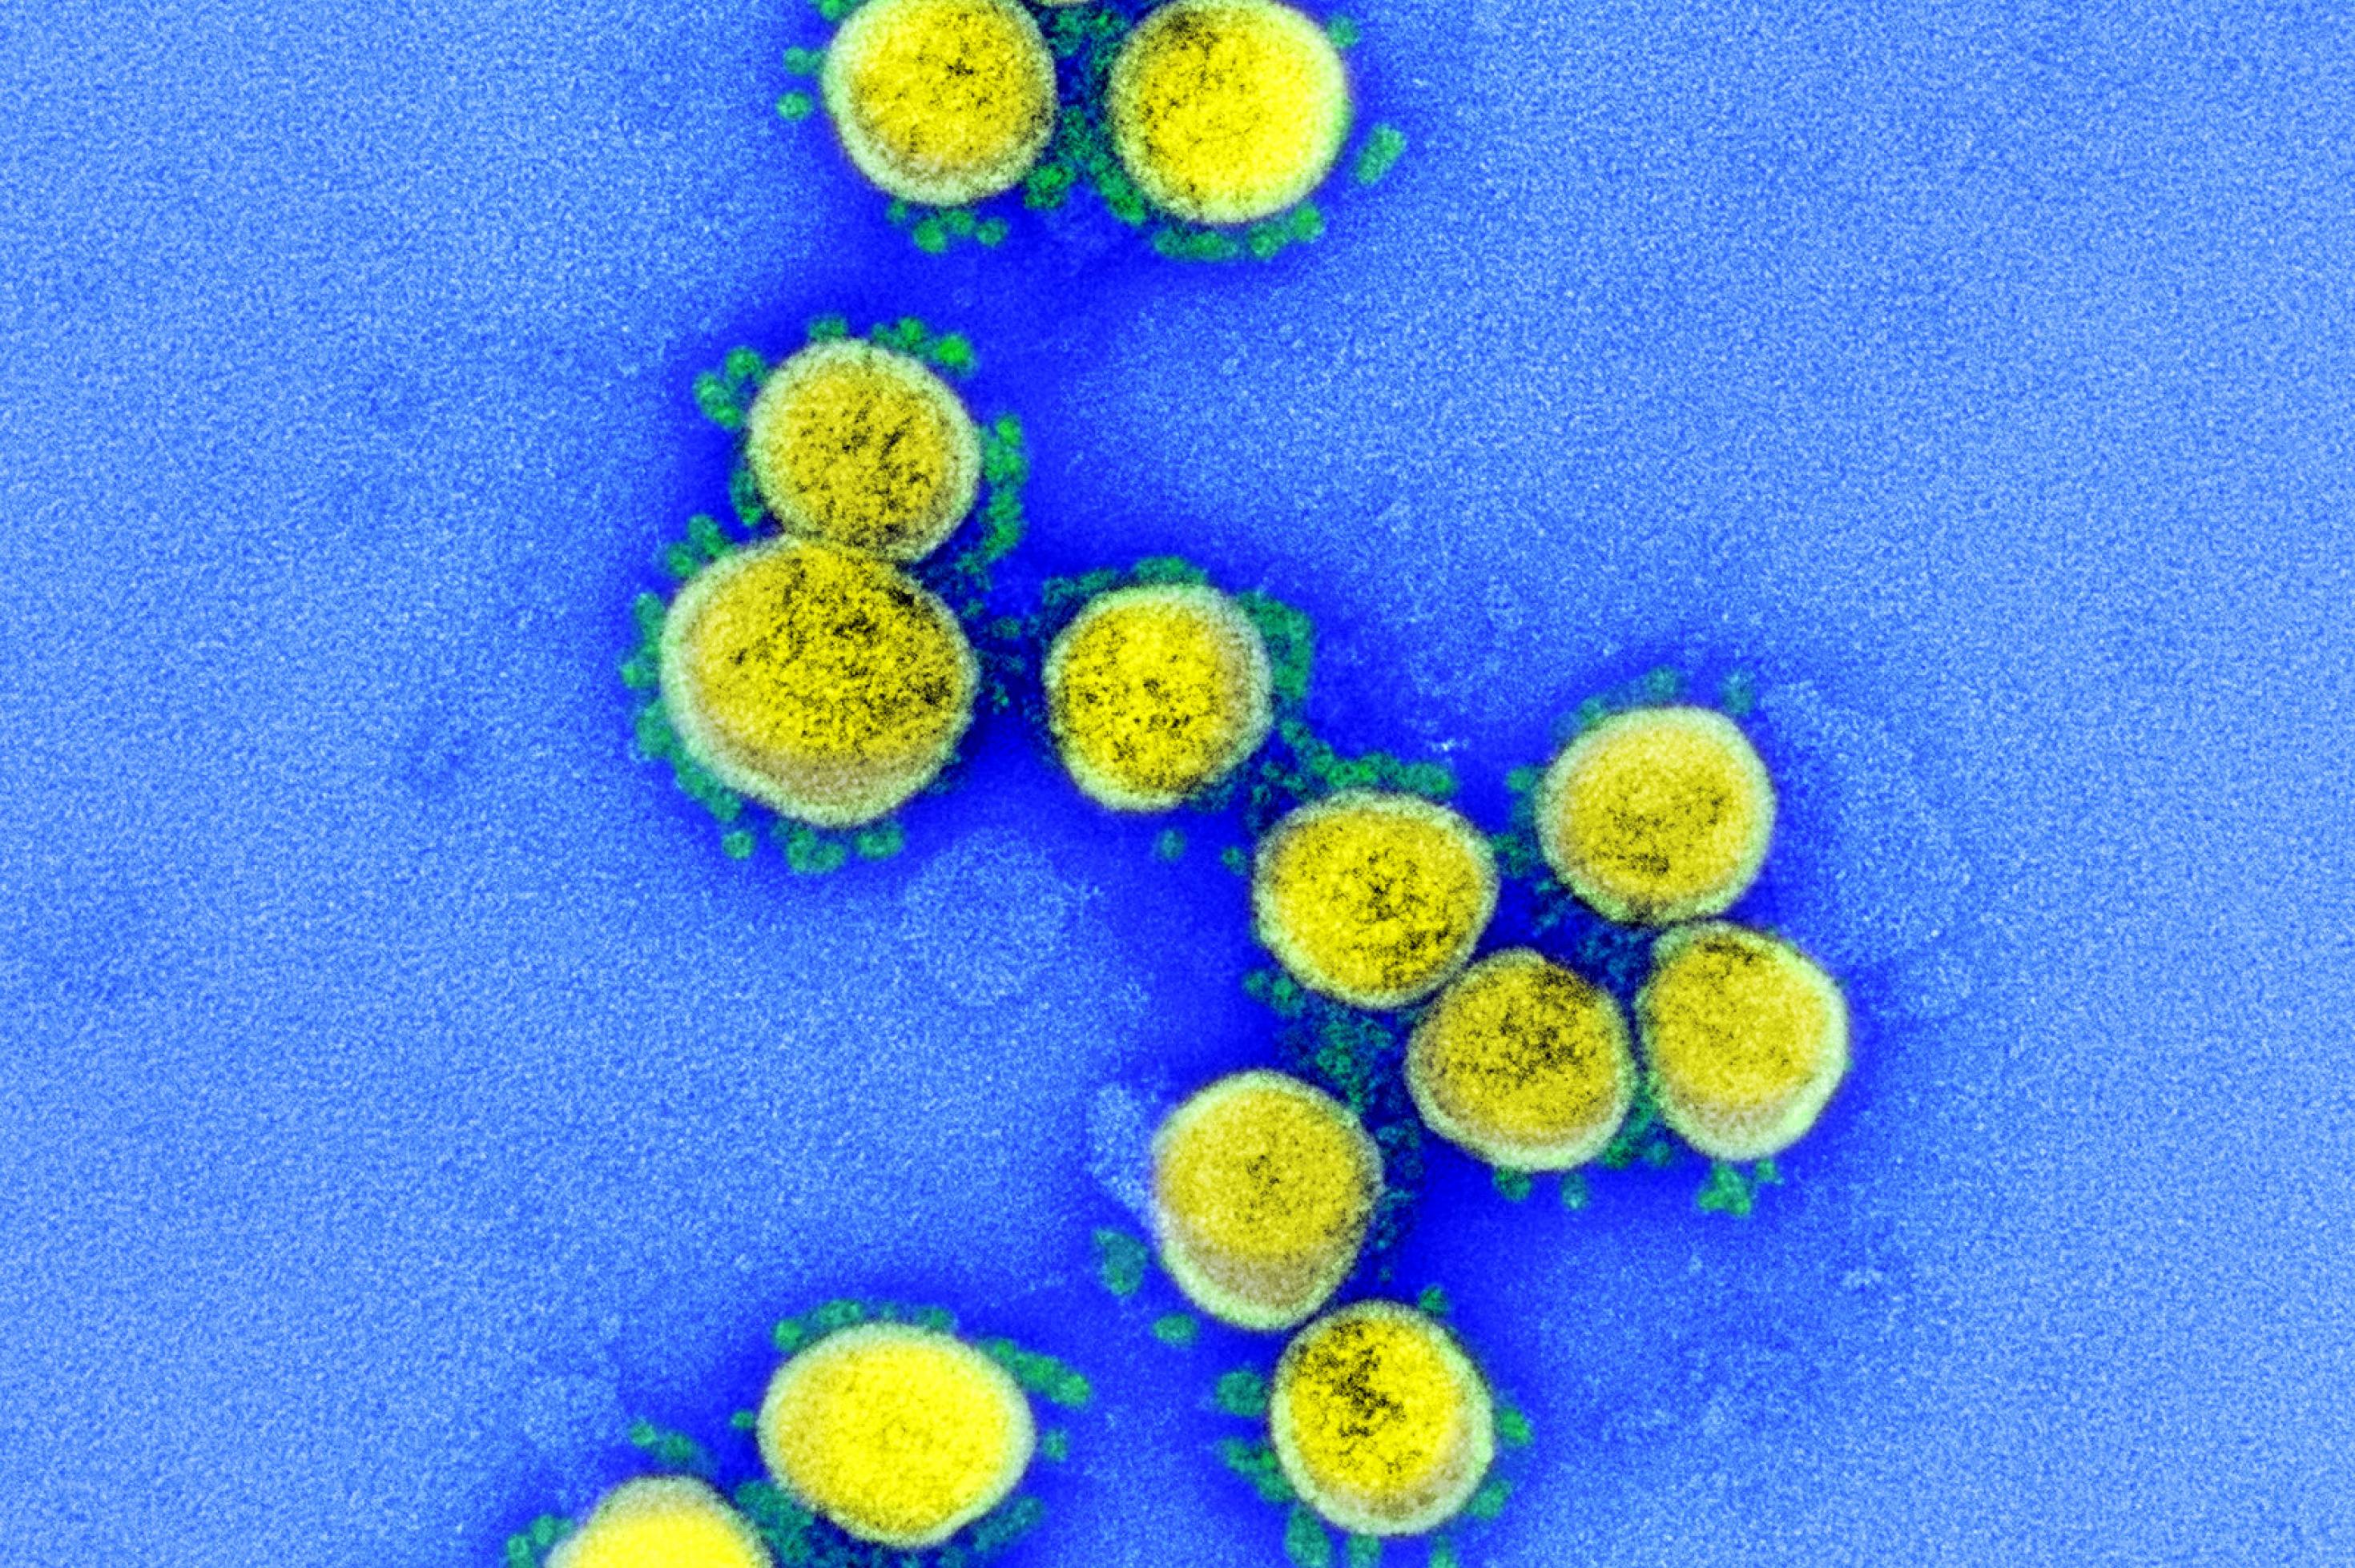 Das Foto zeigt eine elektronenmikroskopische Aufnahme des Coronavirus Sars-CoV-2. Das Virus ist gelb, seine Stacheln grün angefärbt.